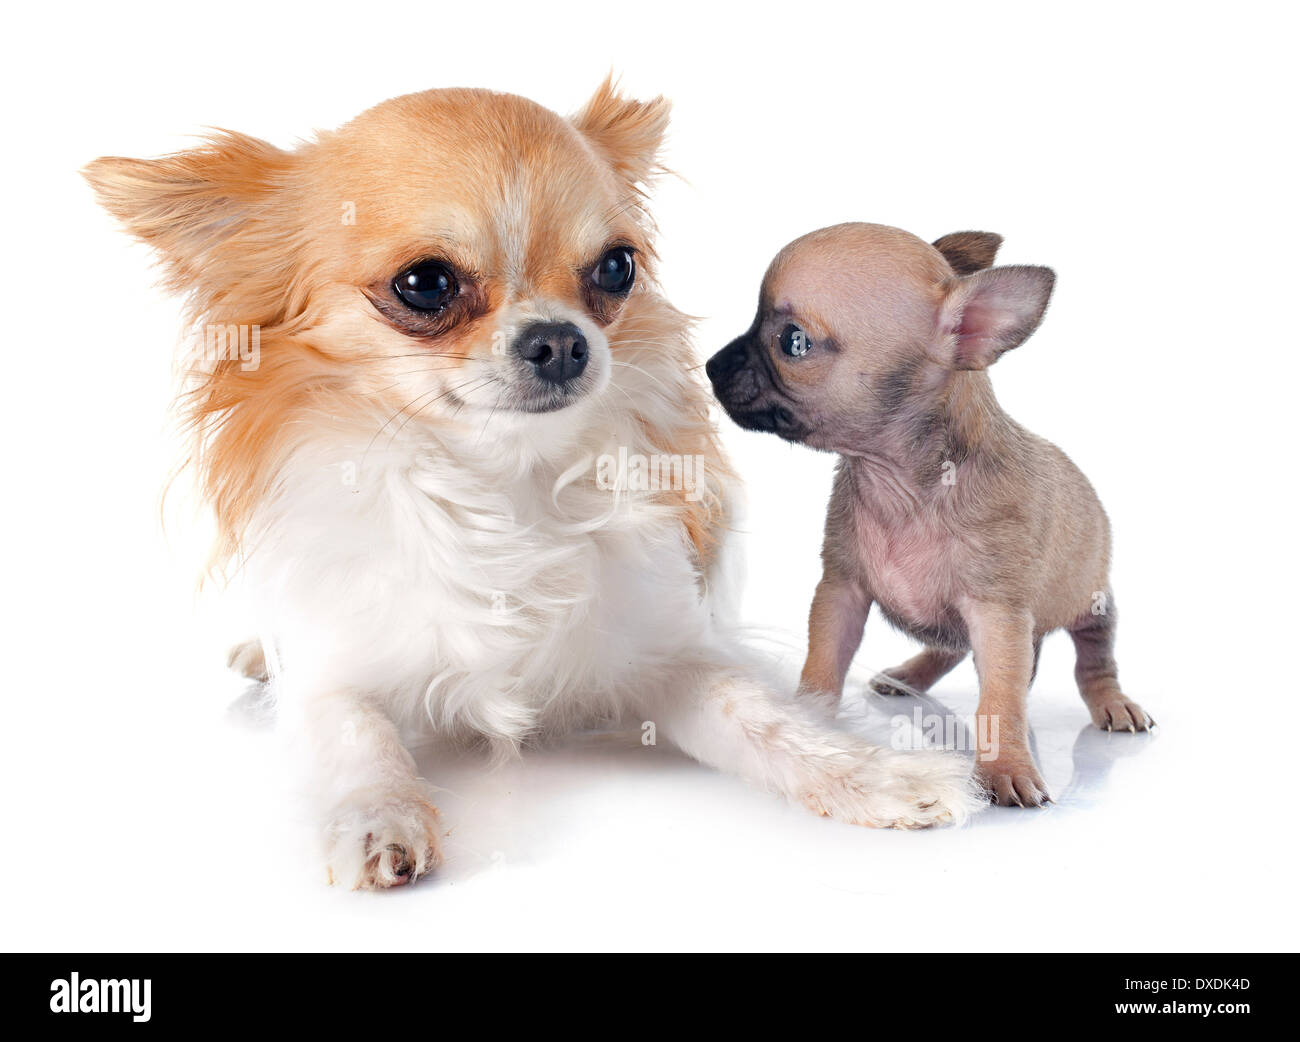 Cucciolo e adulto chihuahua davanti a uno sfondo bianco Foto Stock